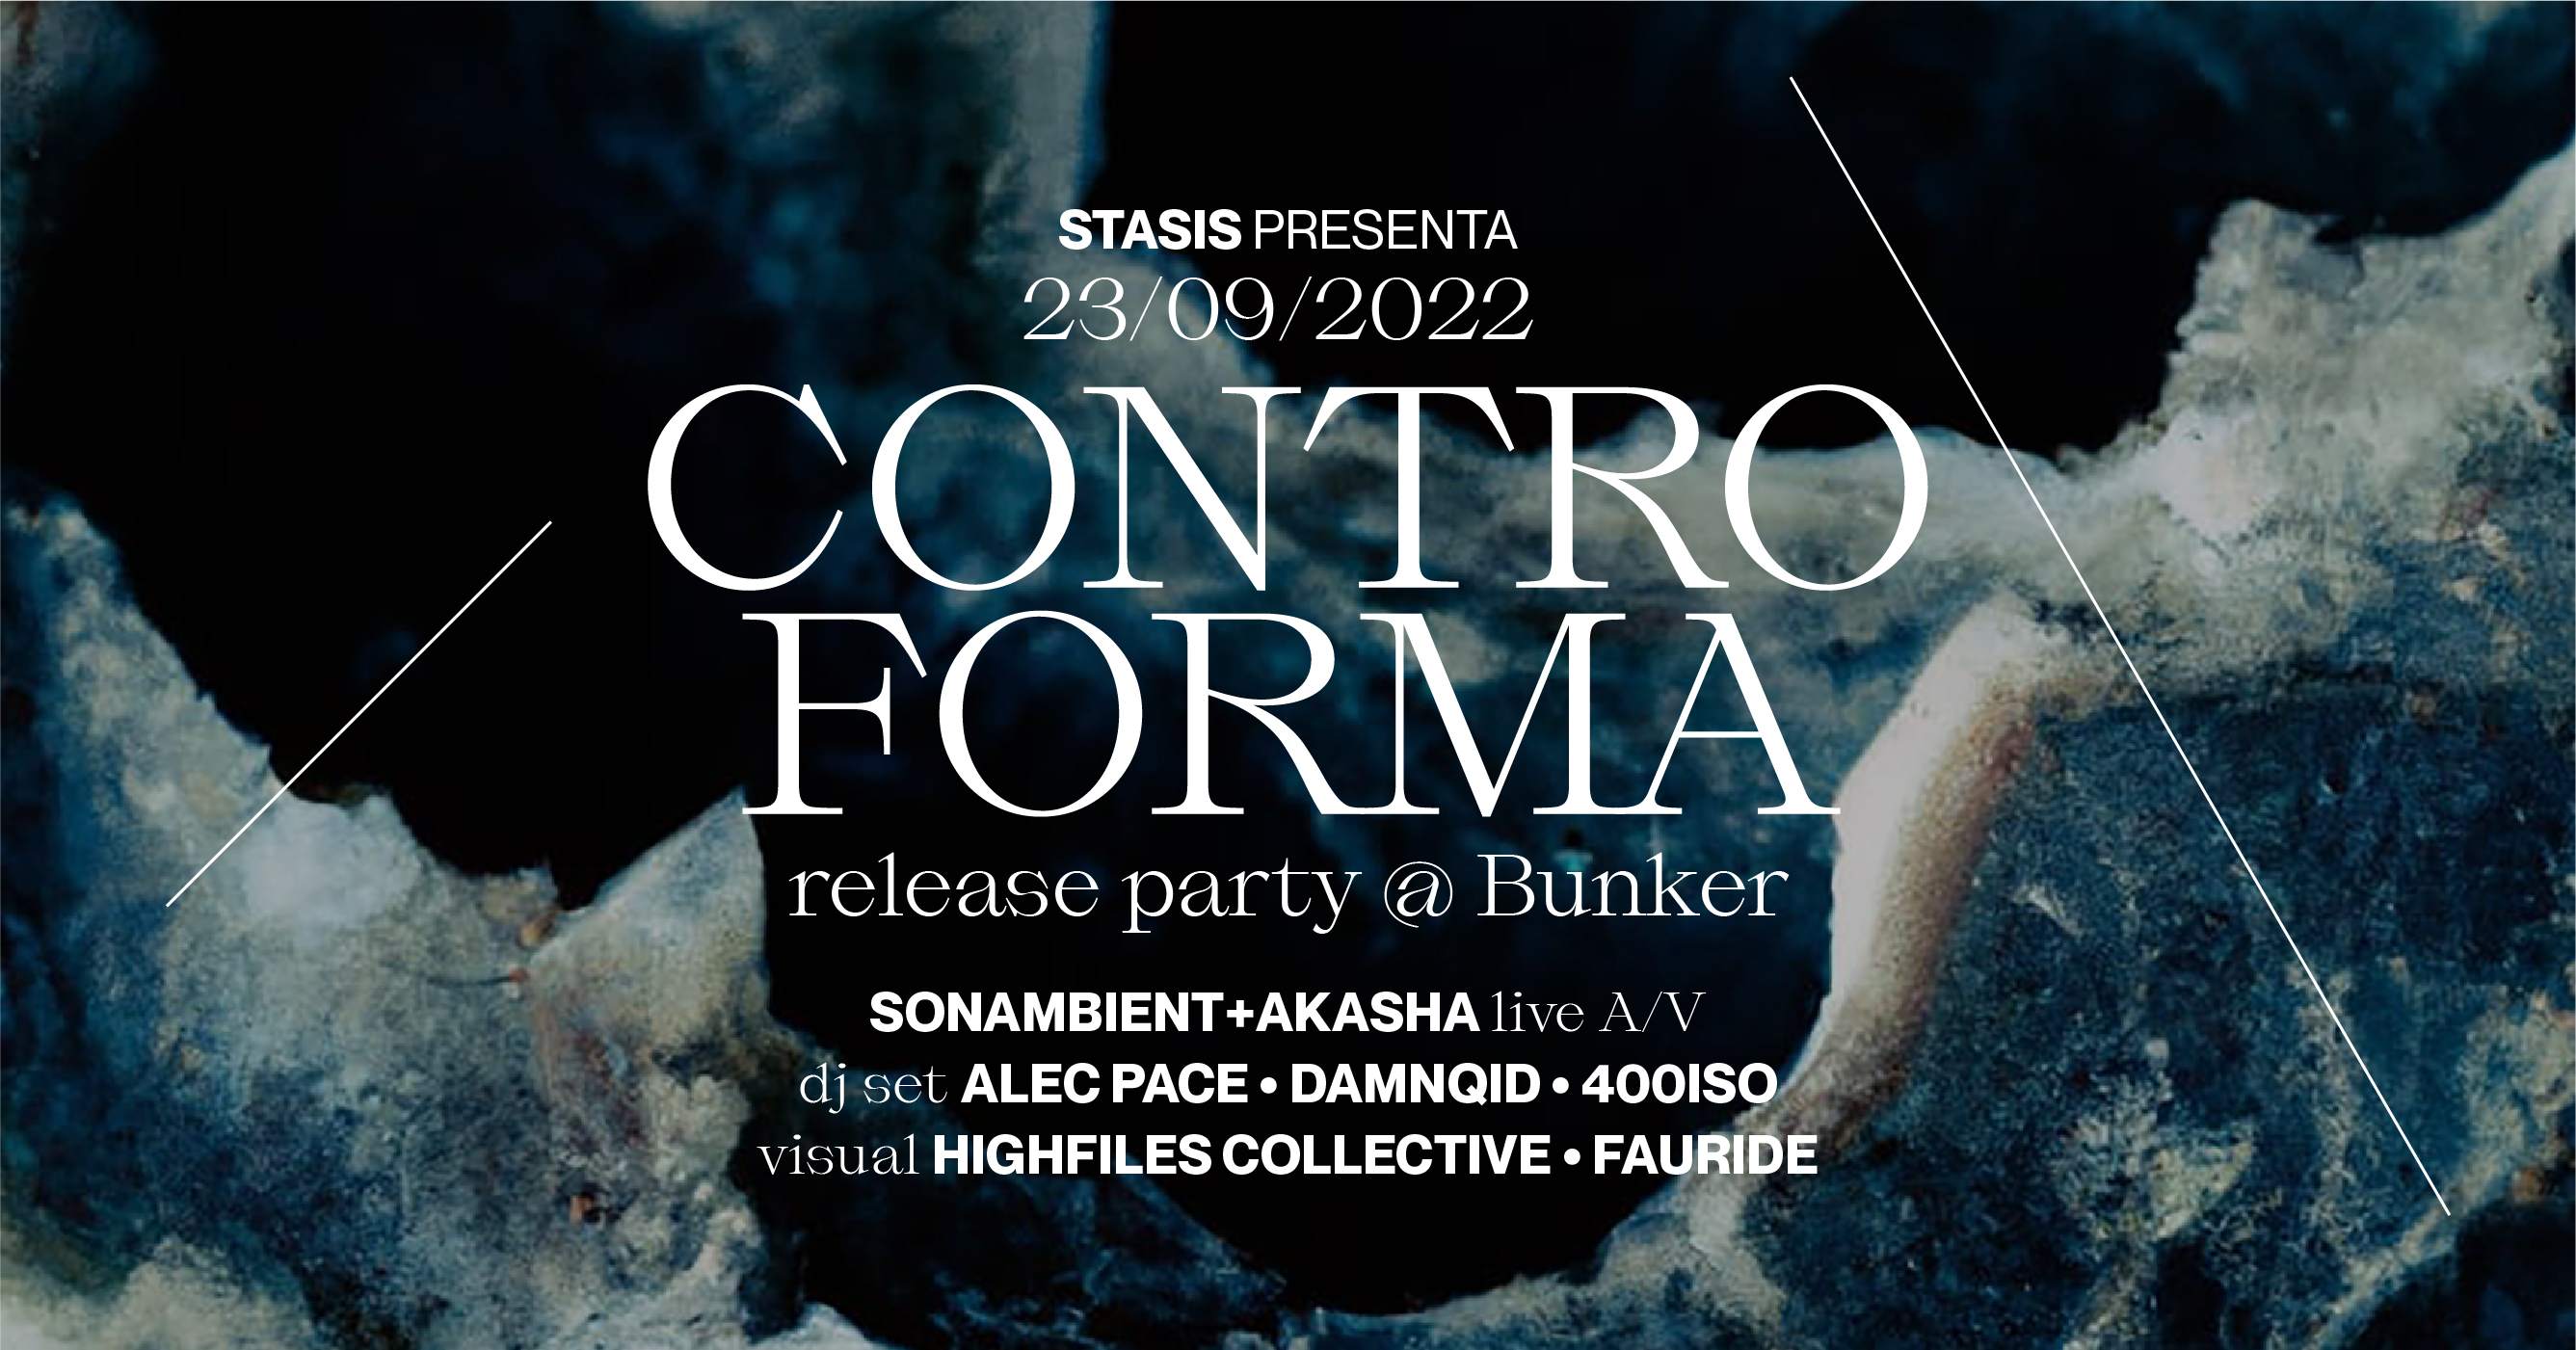 Stasis pres. CONTROFORMA release party - Página frontal